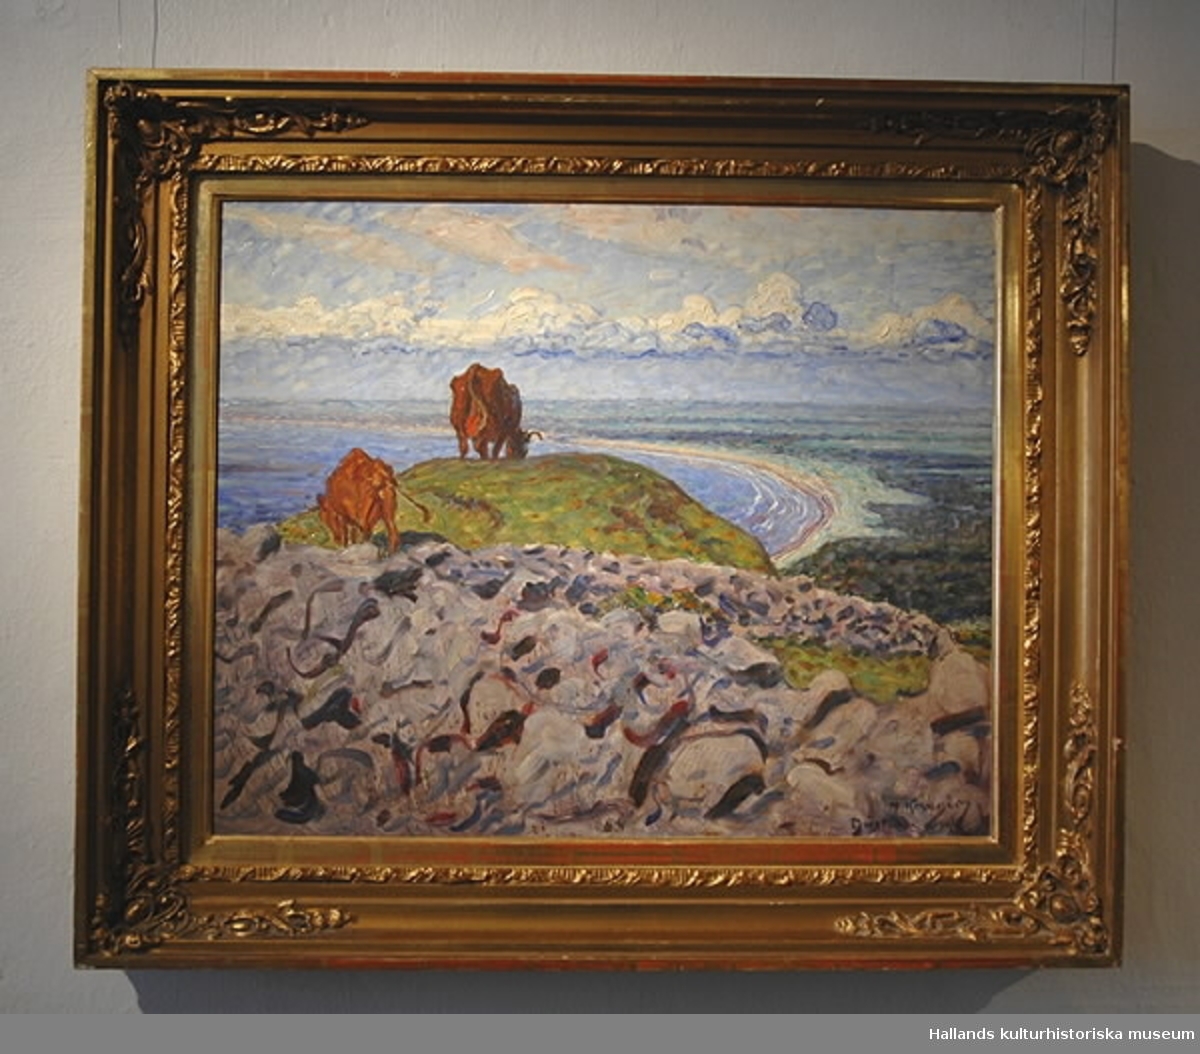 Oljemålning på pannå av Nils Kreuger. "Kustlandskap, motiv från Halland". 1907. Bildmått: bredd 60 cm, höjd 48 cm.